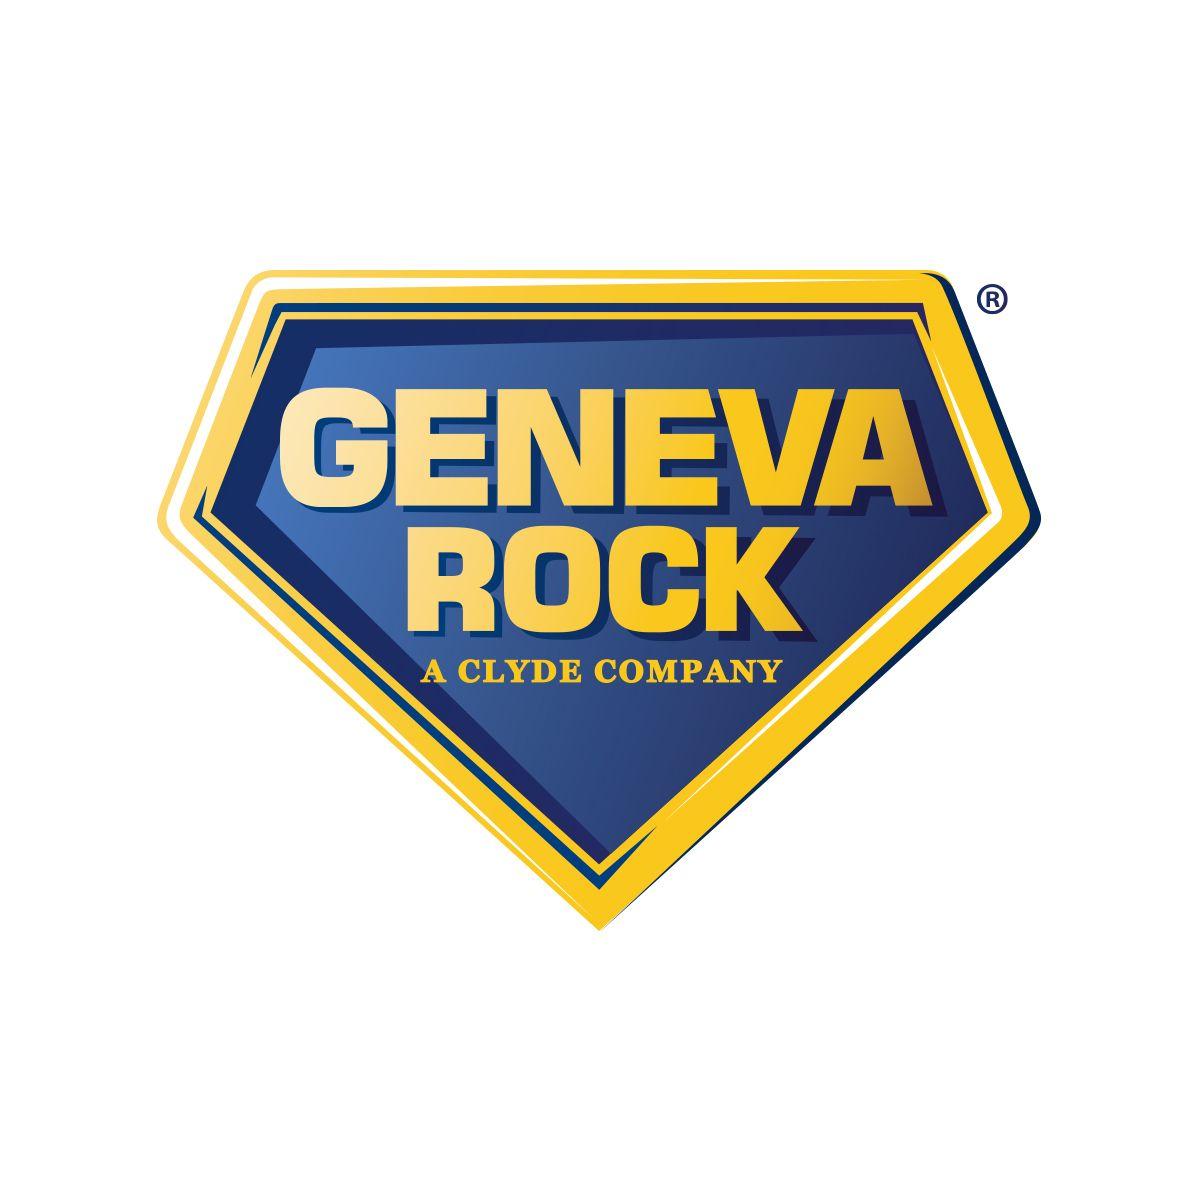 Rock Company Logo - Utah Construction Services Company | Geneva Rock Products